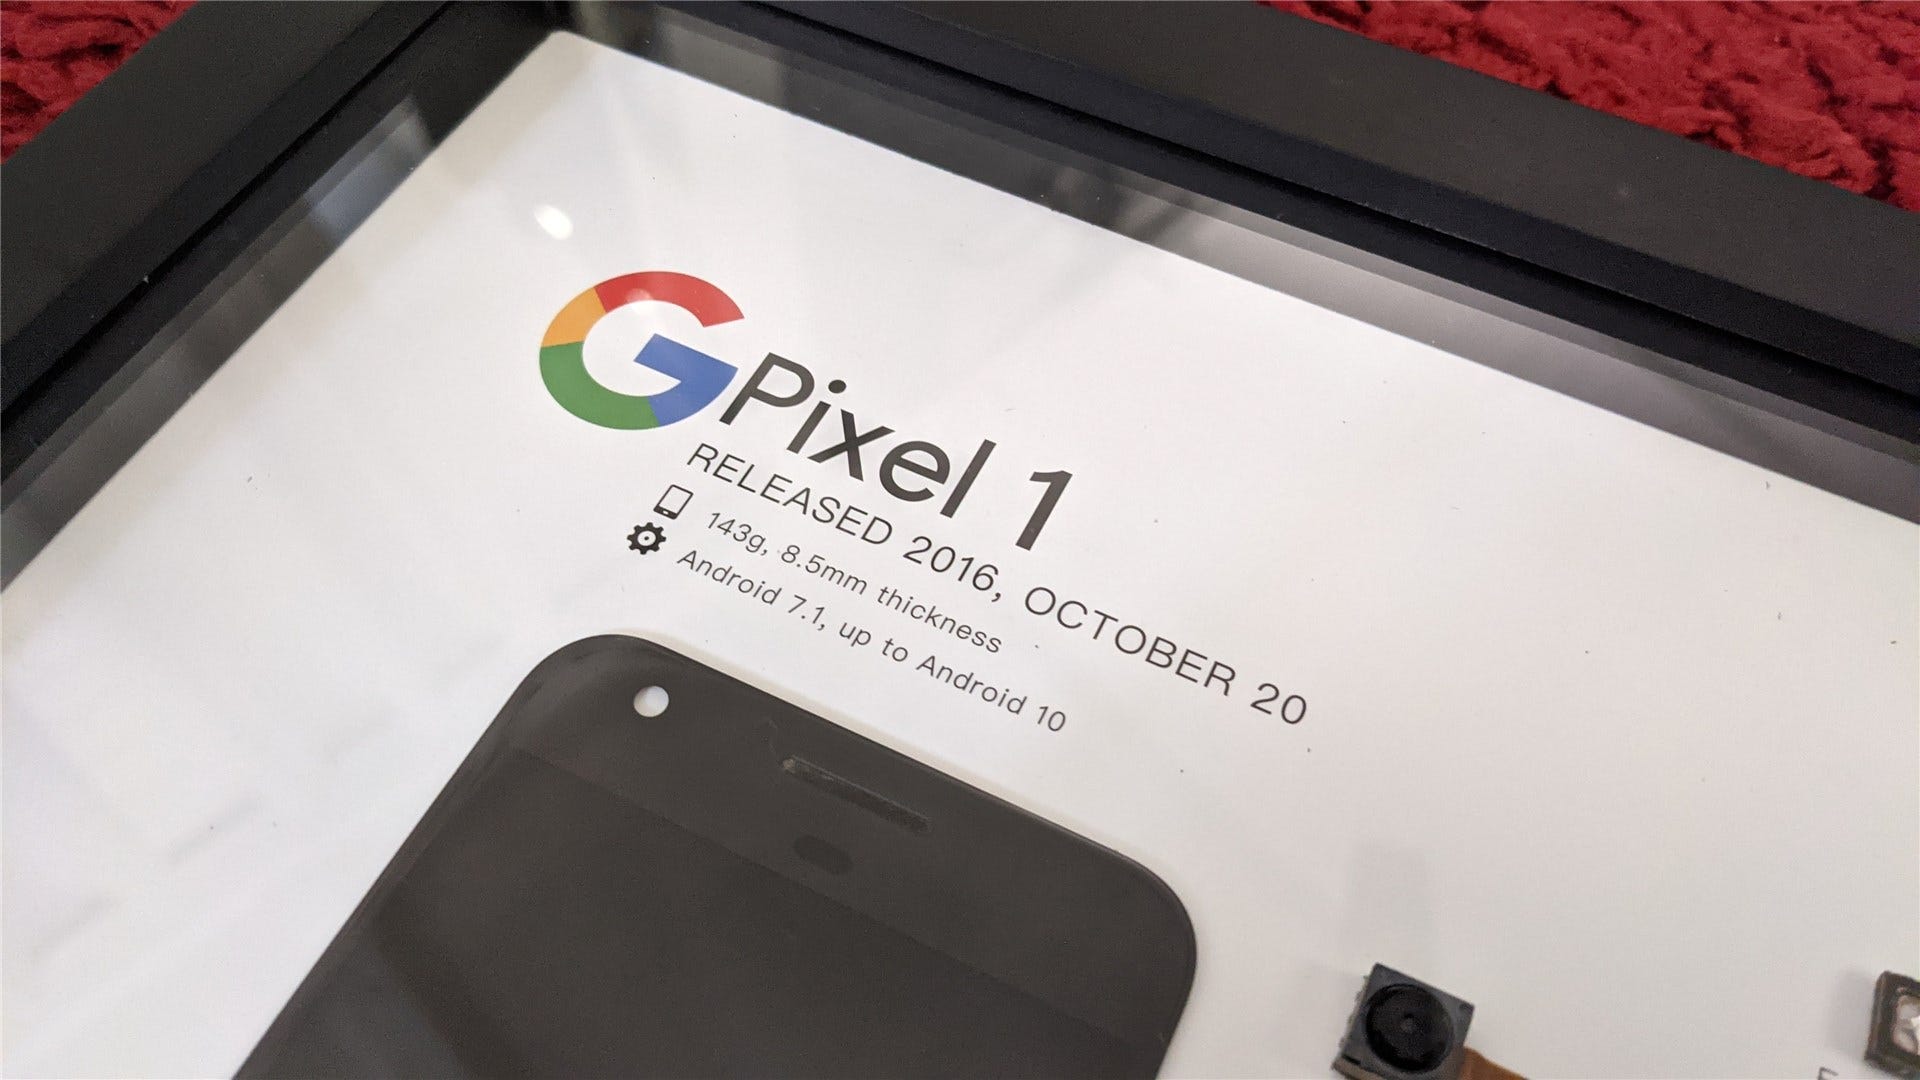 Närbild av Pixel 1-detaljer, inklusive releasedatum och Android-versioner